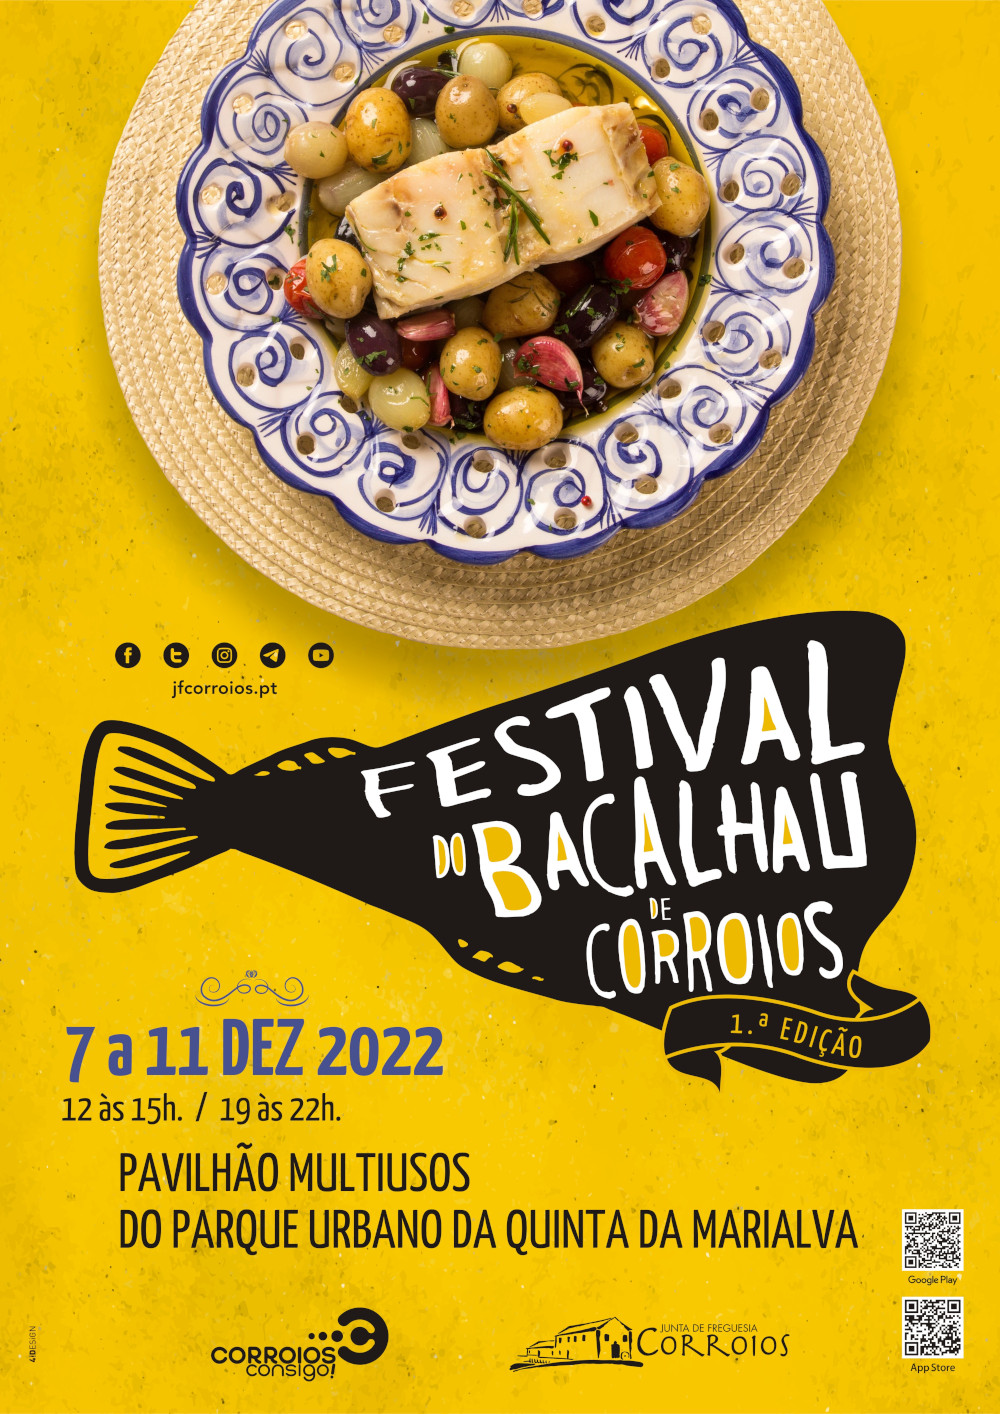 Festival do Bacalhau de Corroios